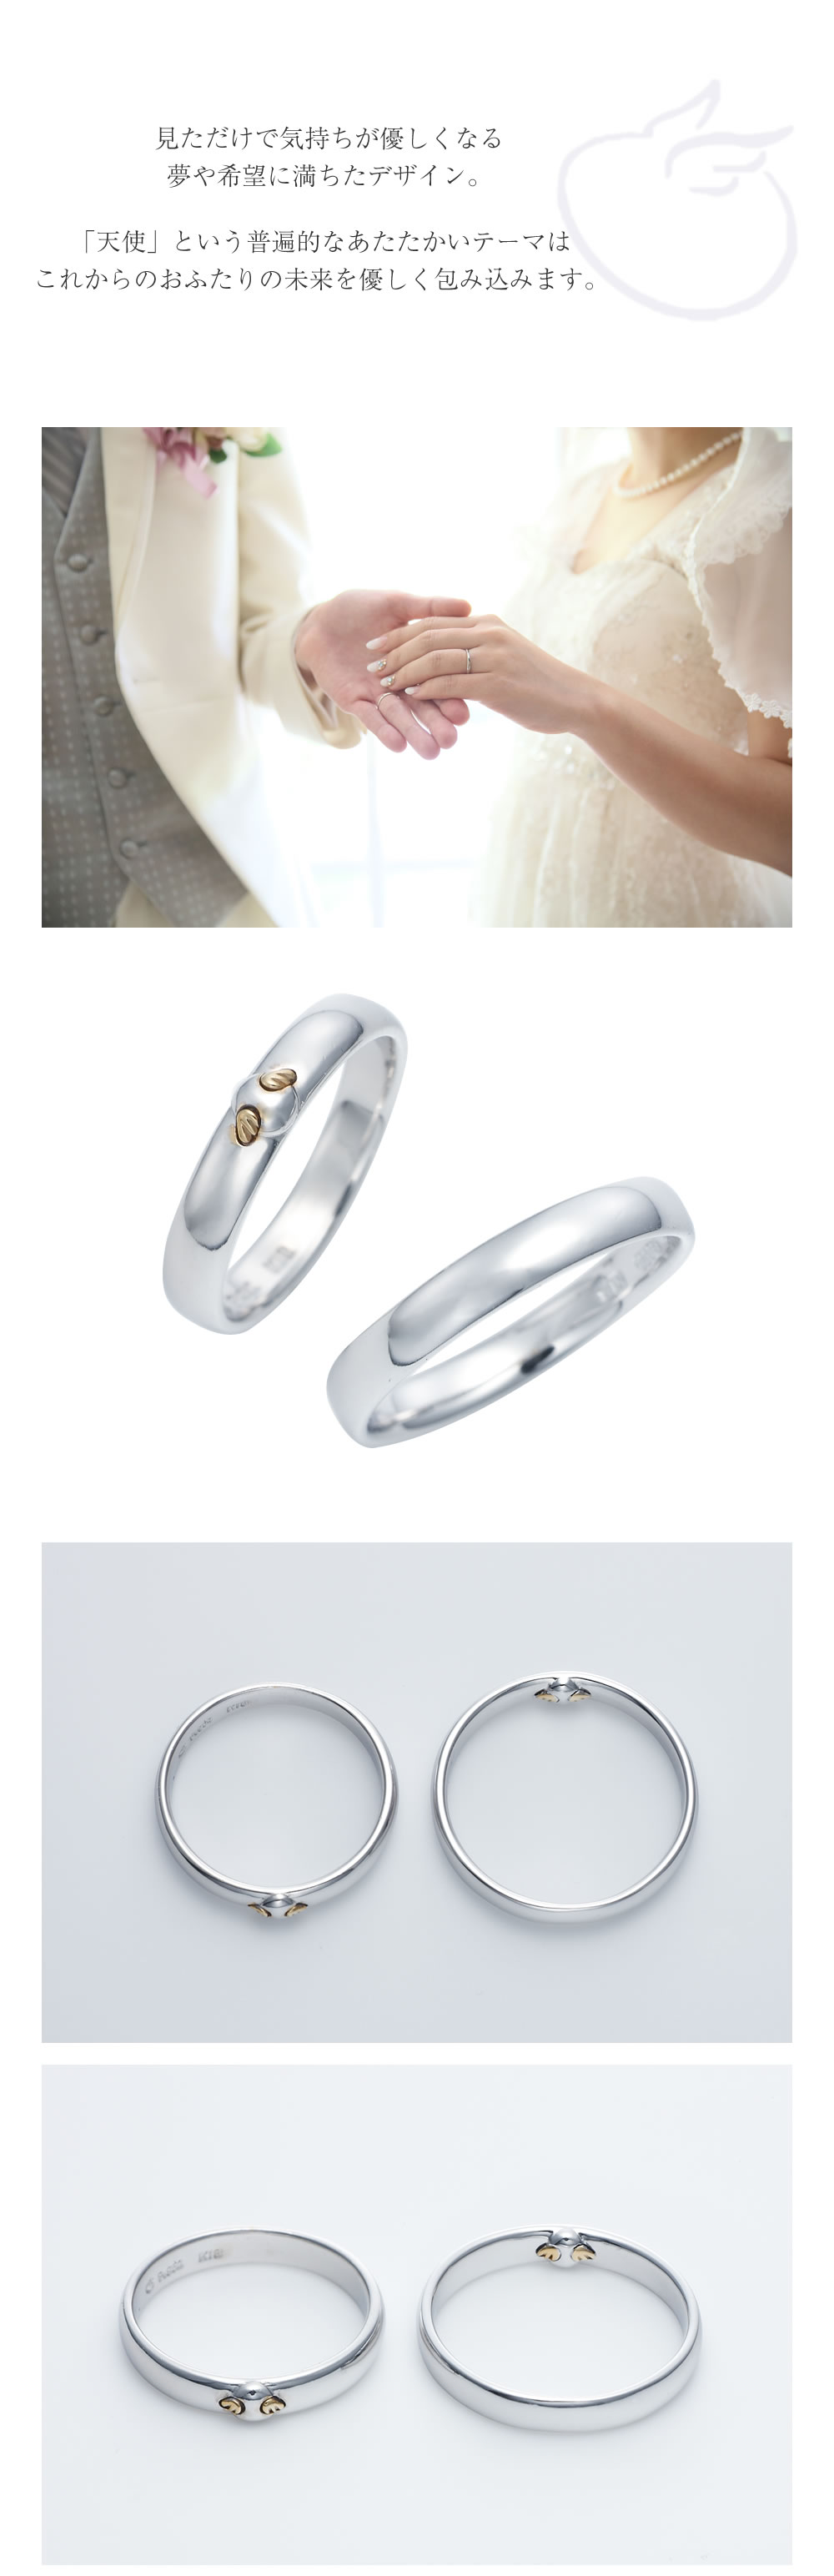 【結婚指輪】天使の卵のディテールとコンセプト